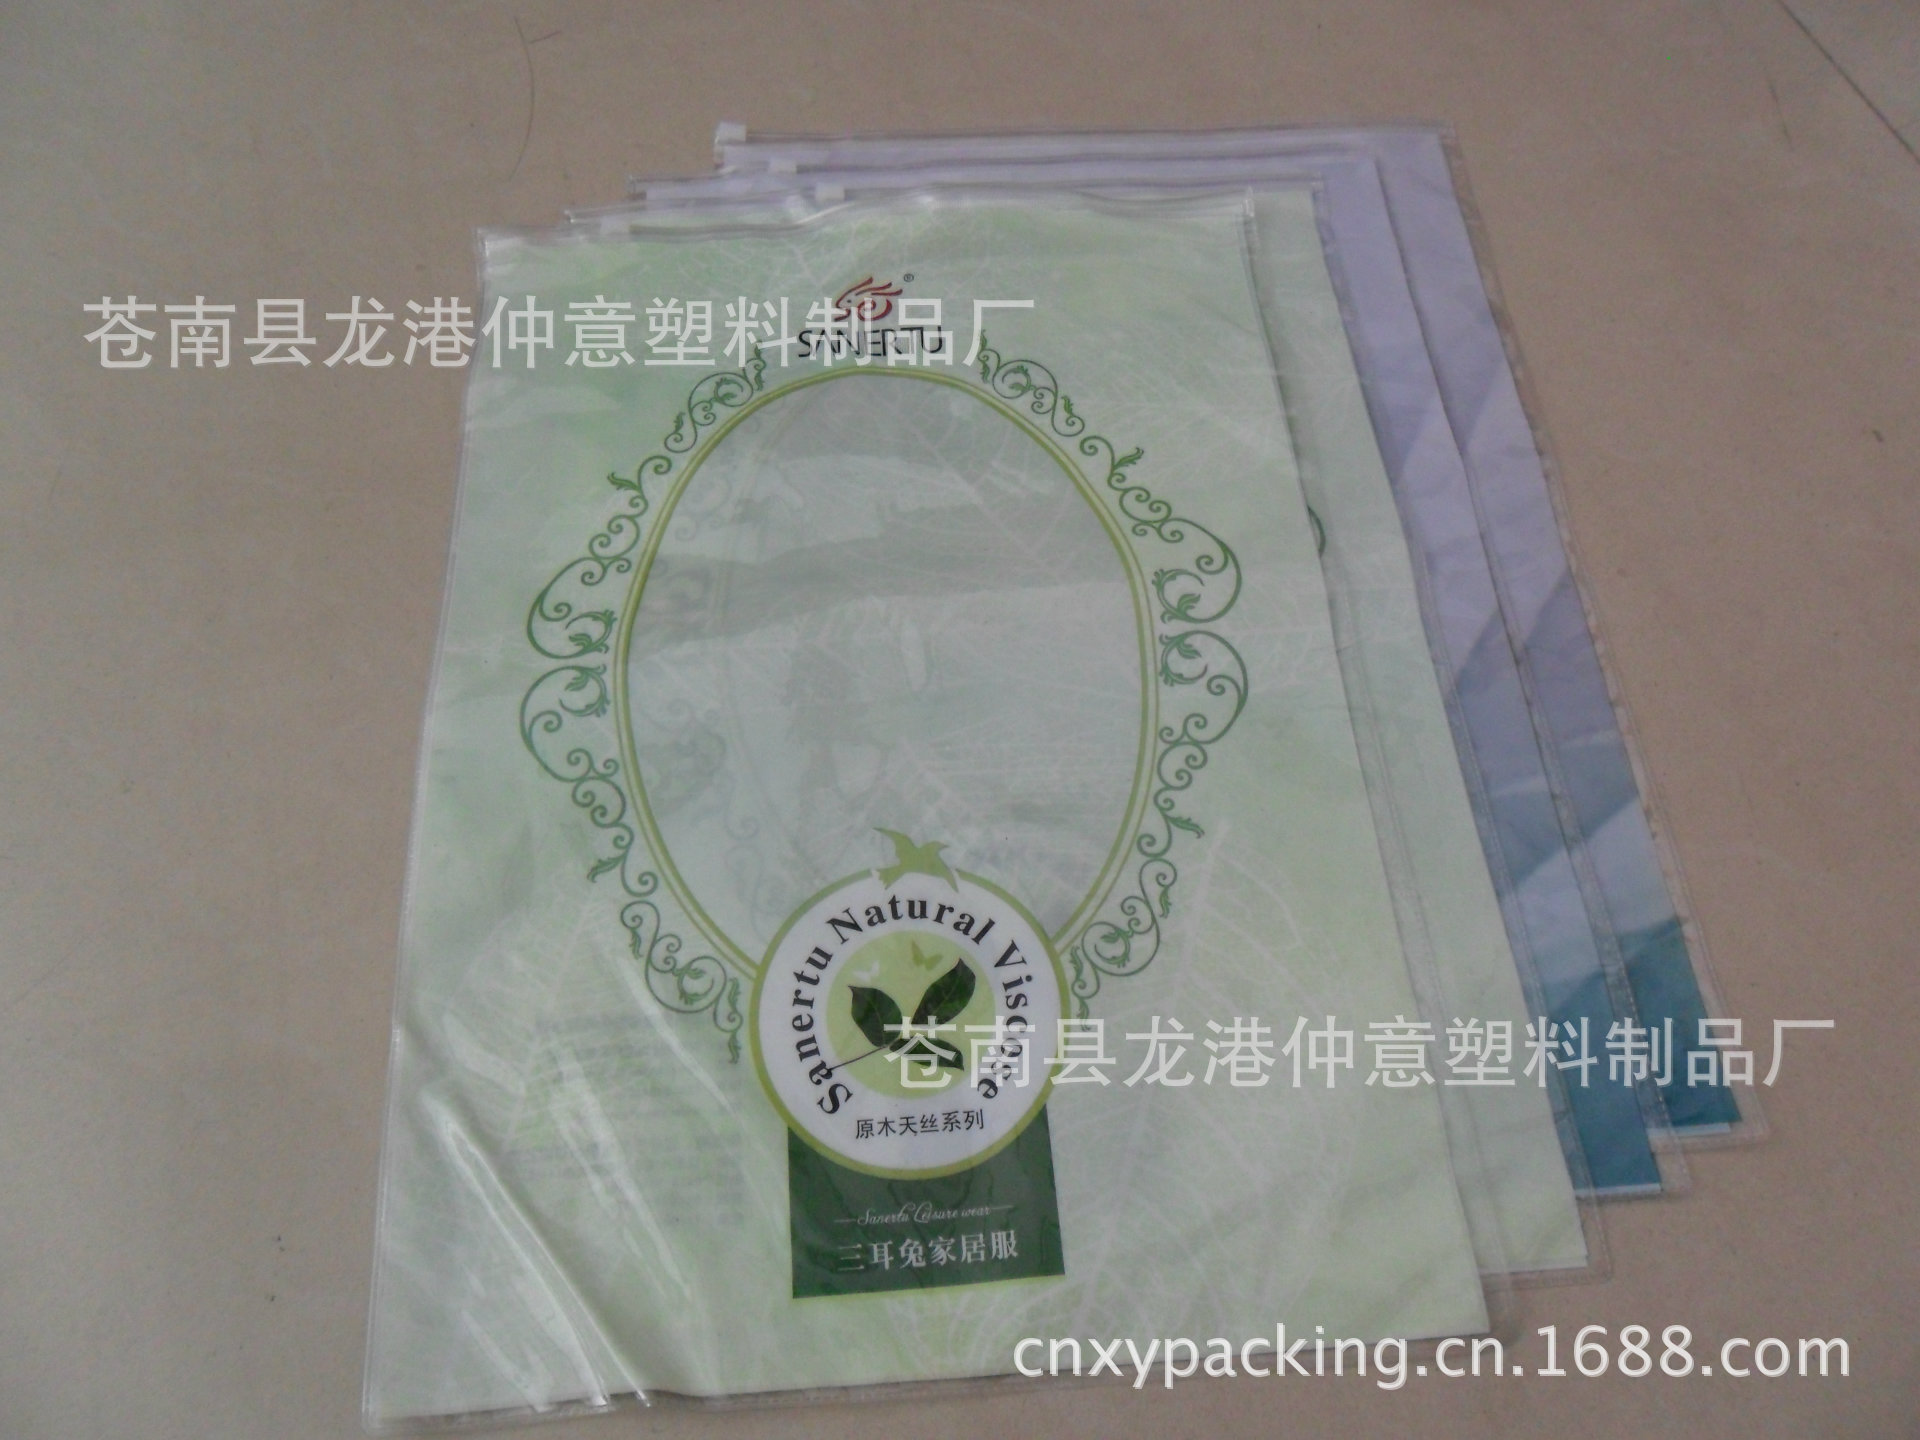 包装材料及容器 塑料包装容器 塑料袋 厂家专业生产pvc睡衣包装袋